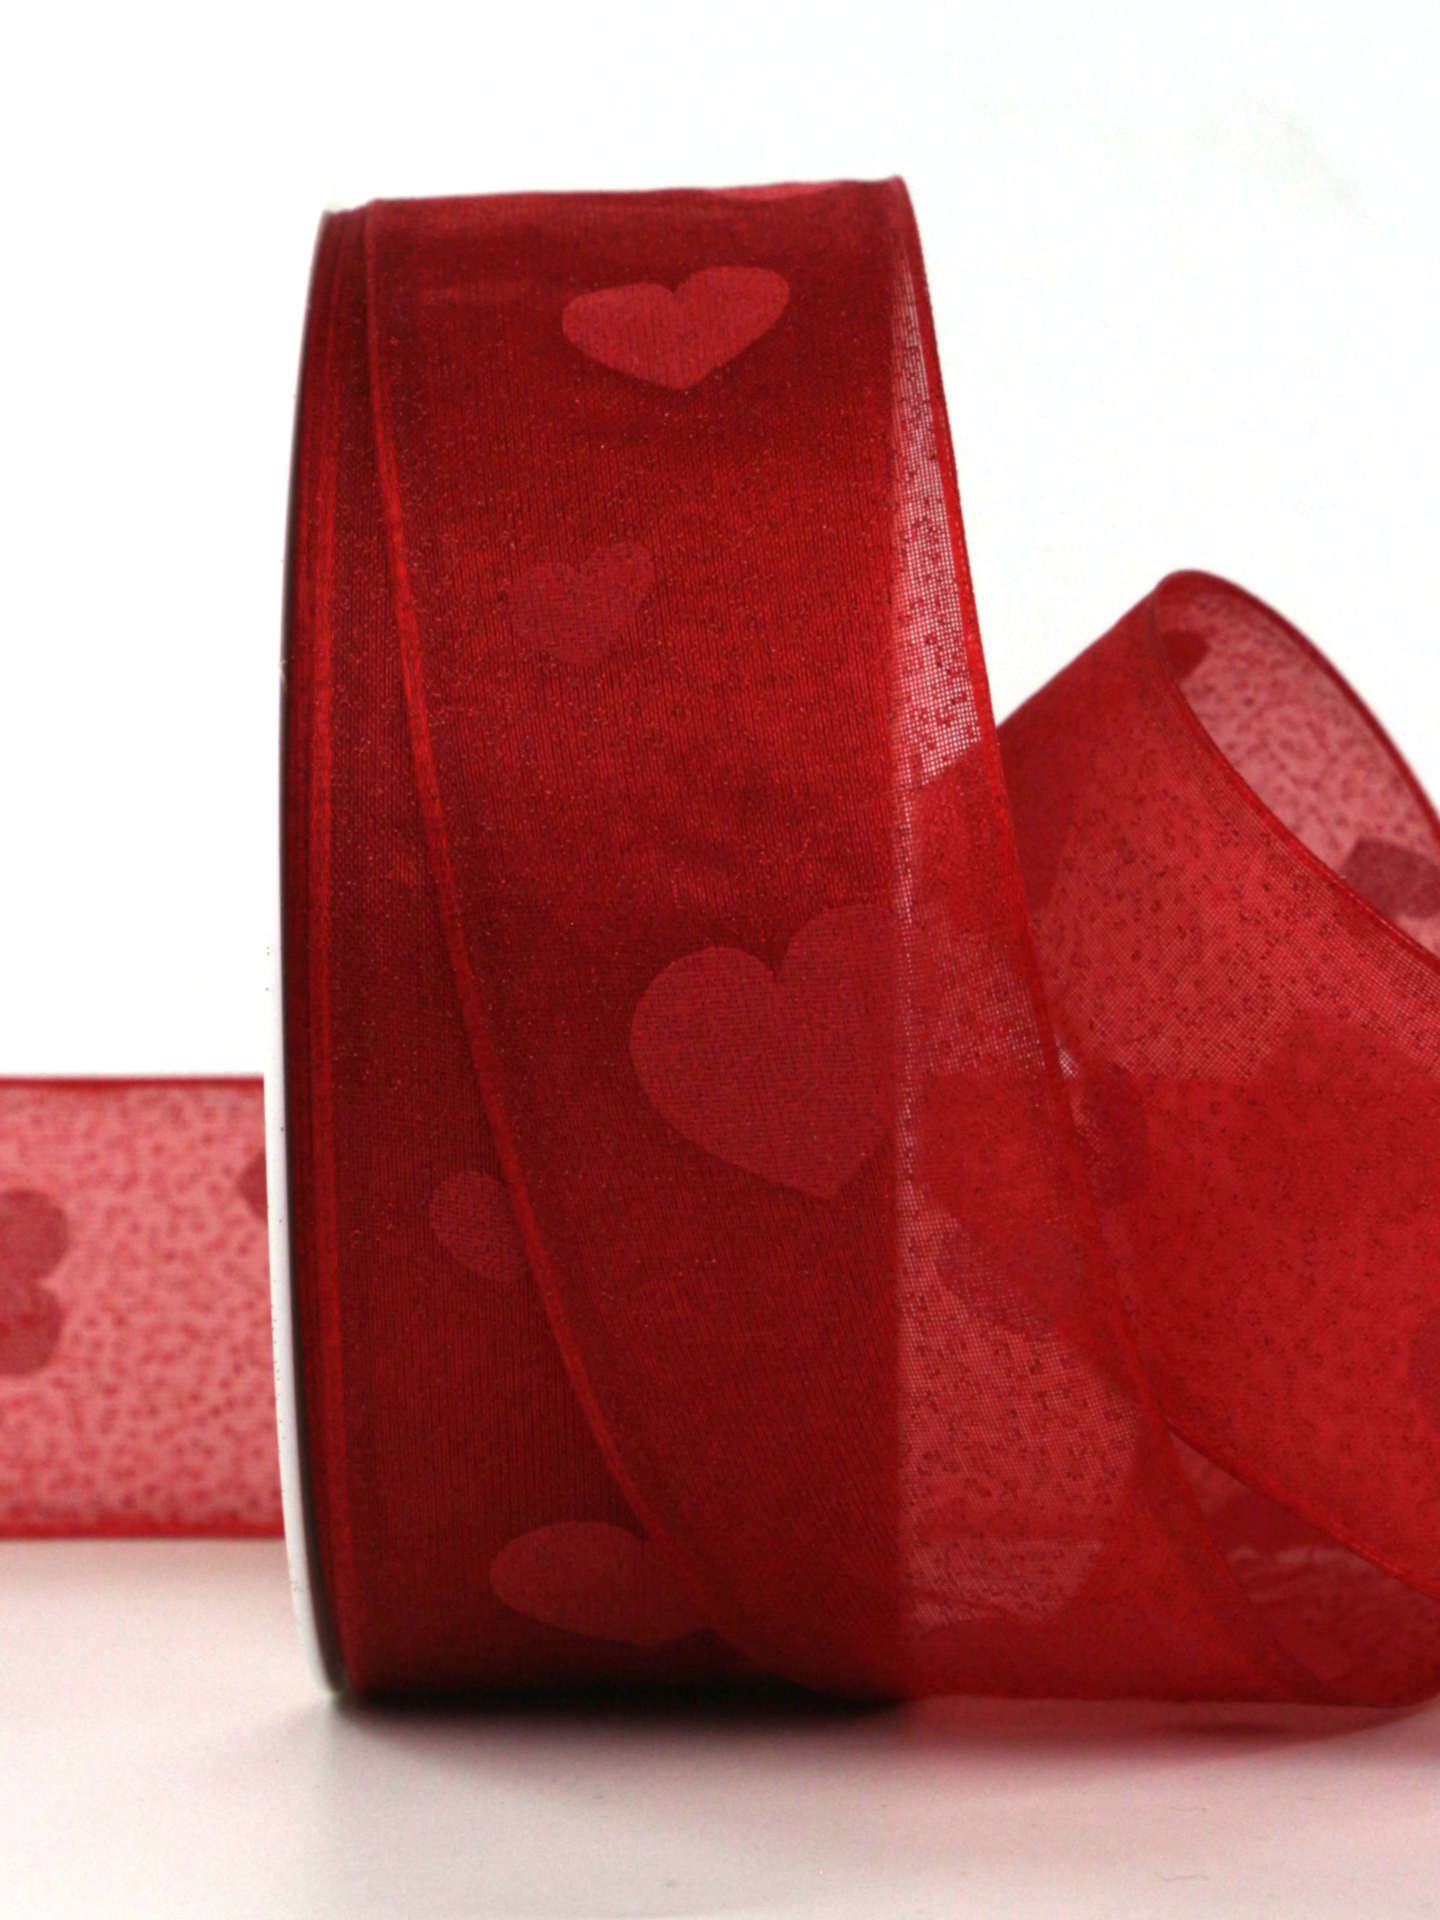 Organzaband mit Herzen, rot, 40 mm breit, 20 m Rolle - valentinstag, geschenkband, geschenkband-gemustert, geschenkband-mit-herzen, geschenkband-fuer-anlaesse, muttertag, anlasse